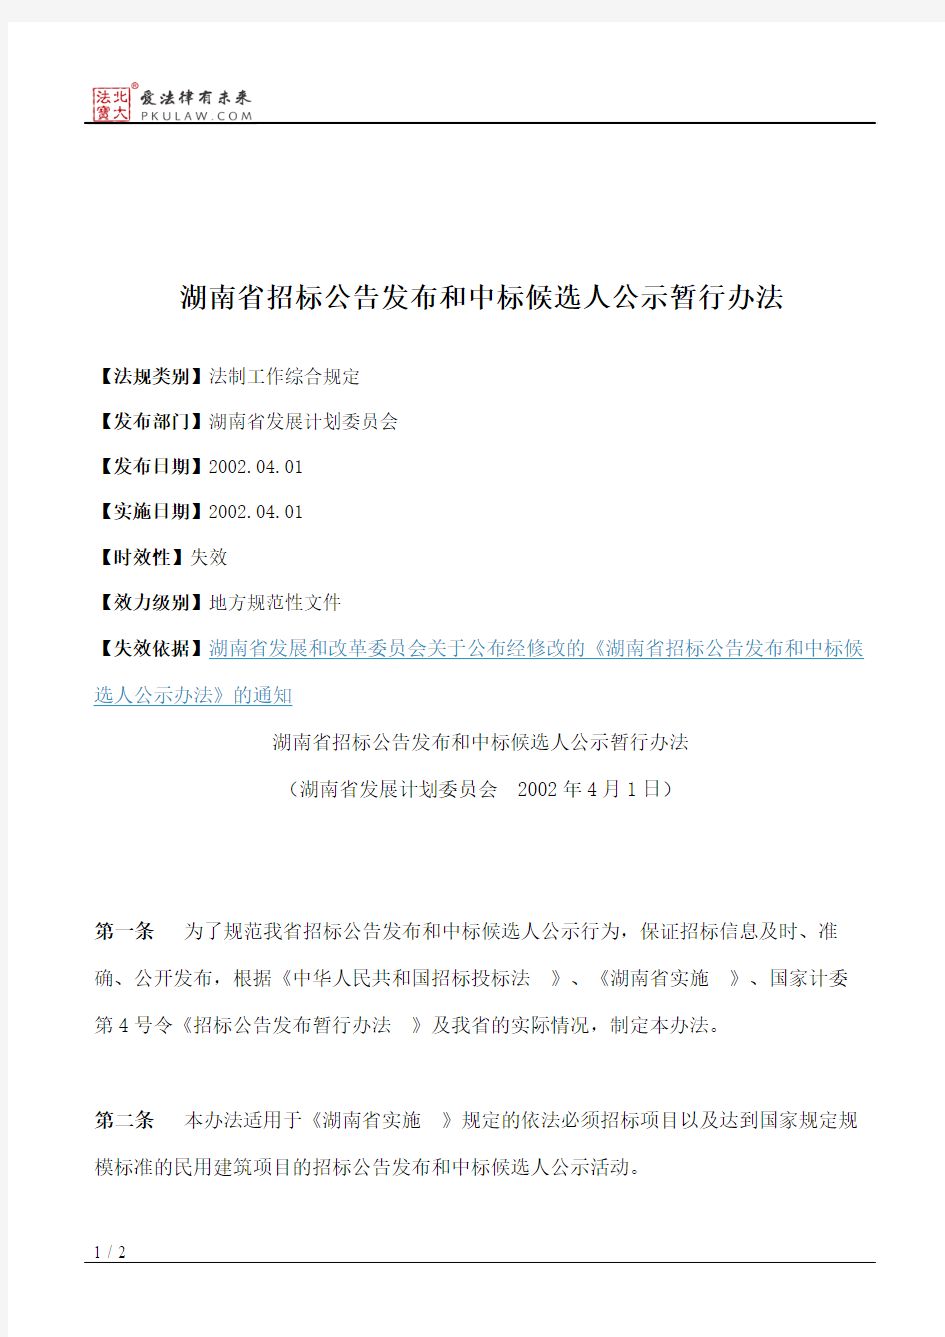 湖南省招标公告发布和中标候选人公示暂行办法